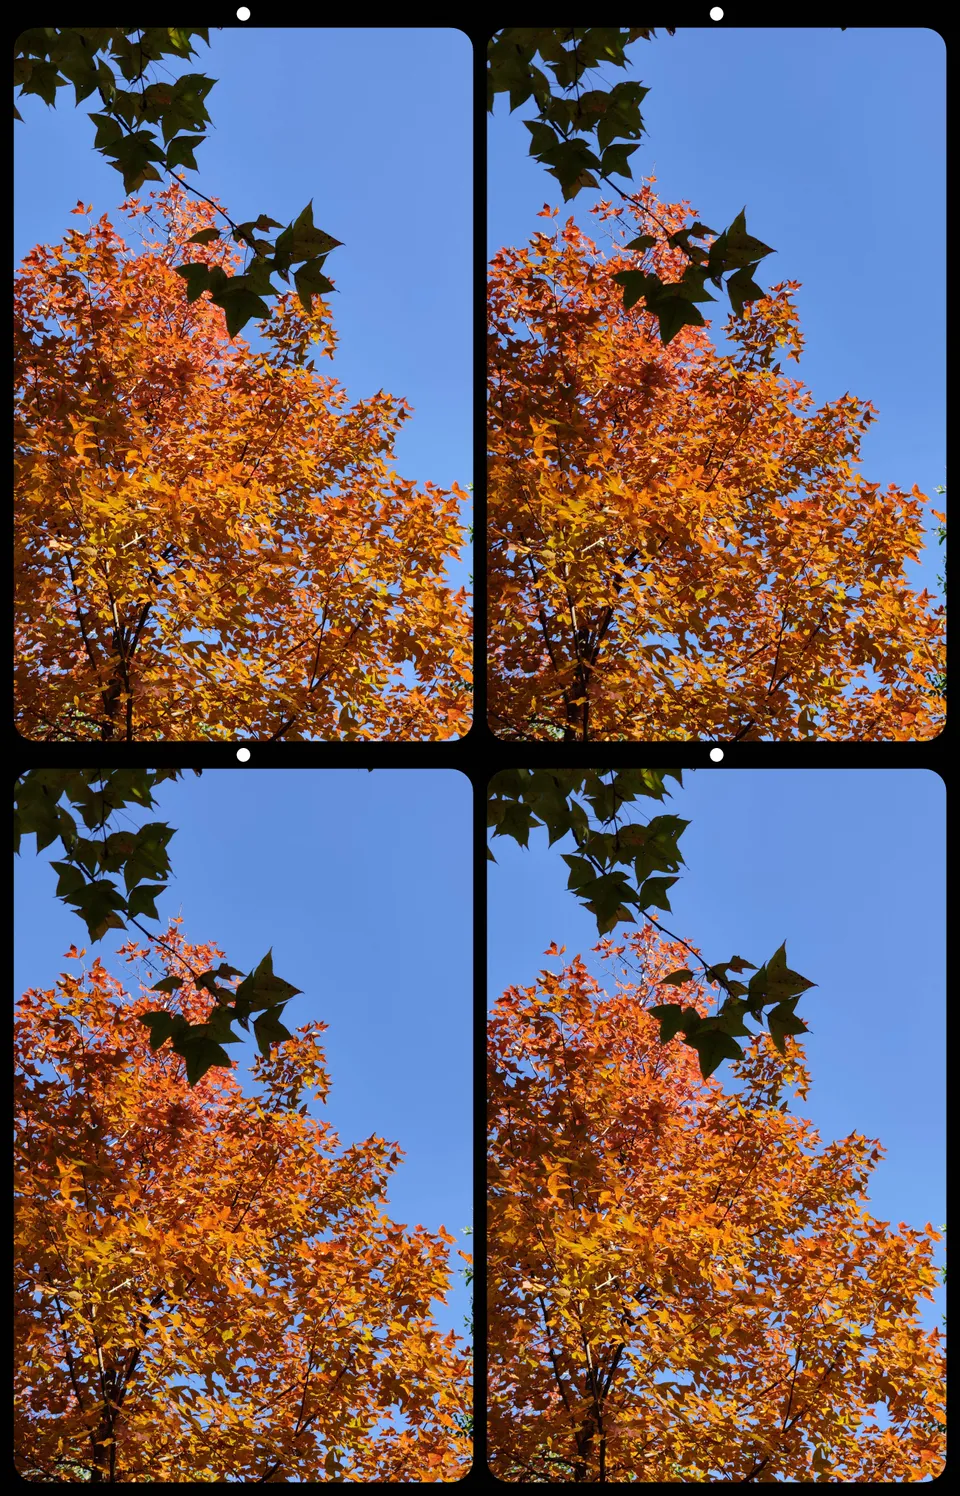 Stereo shot of leaves